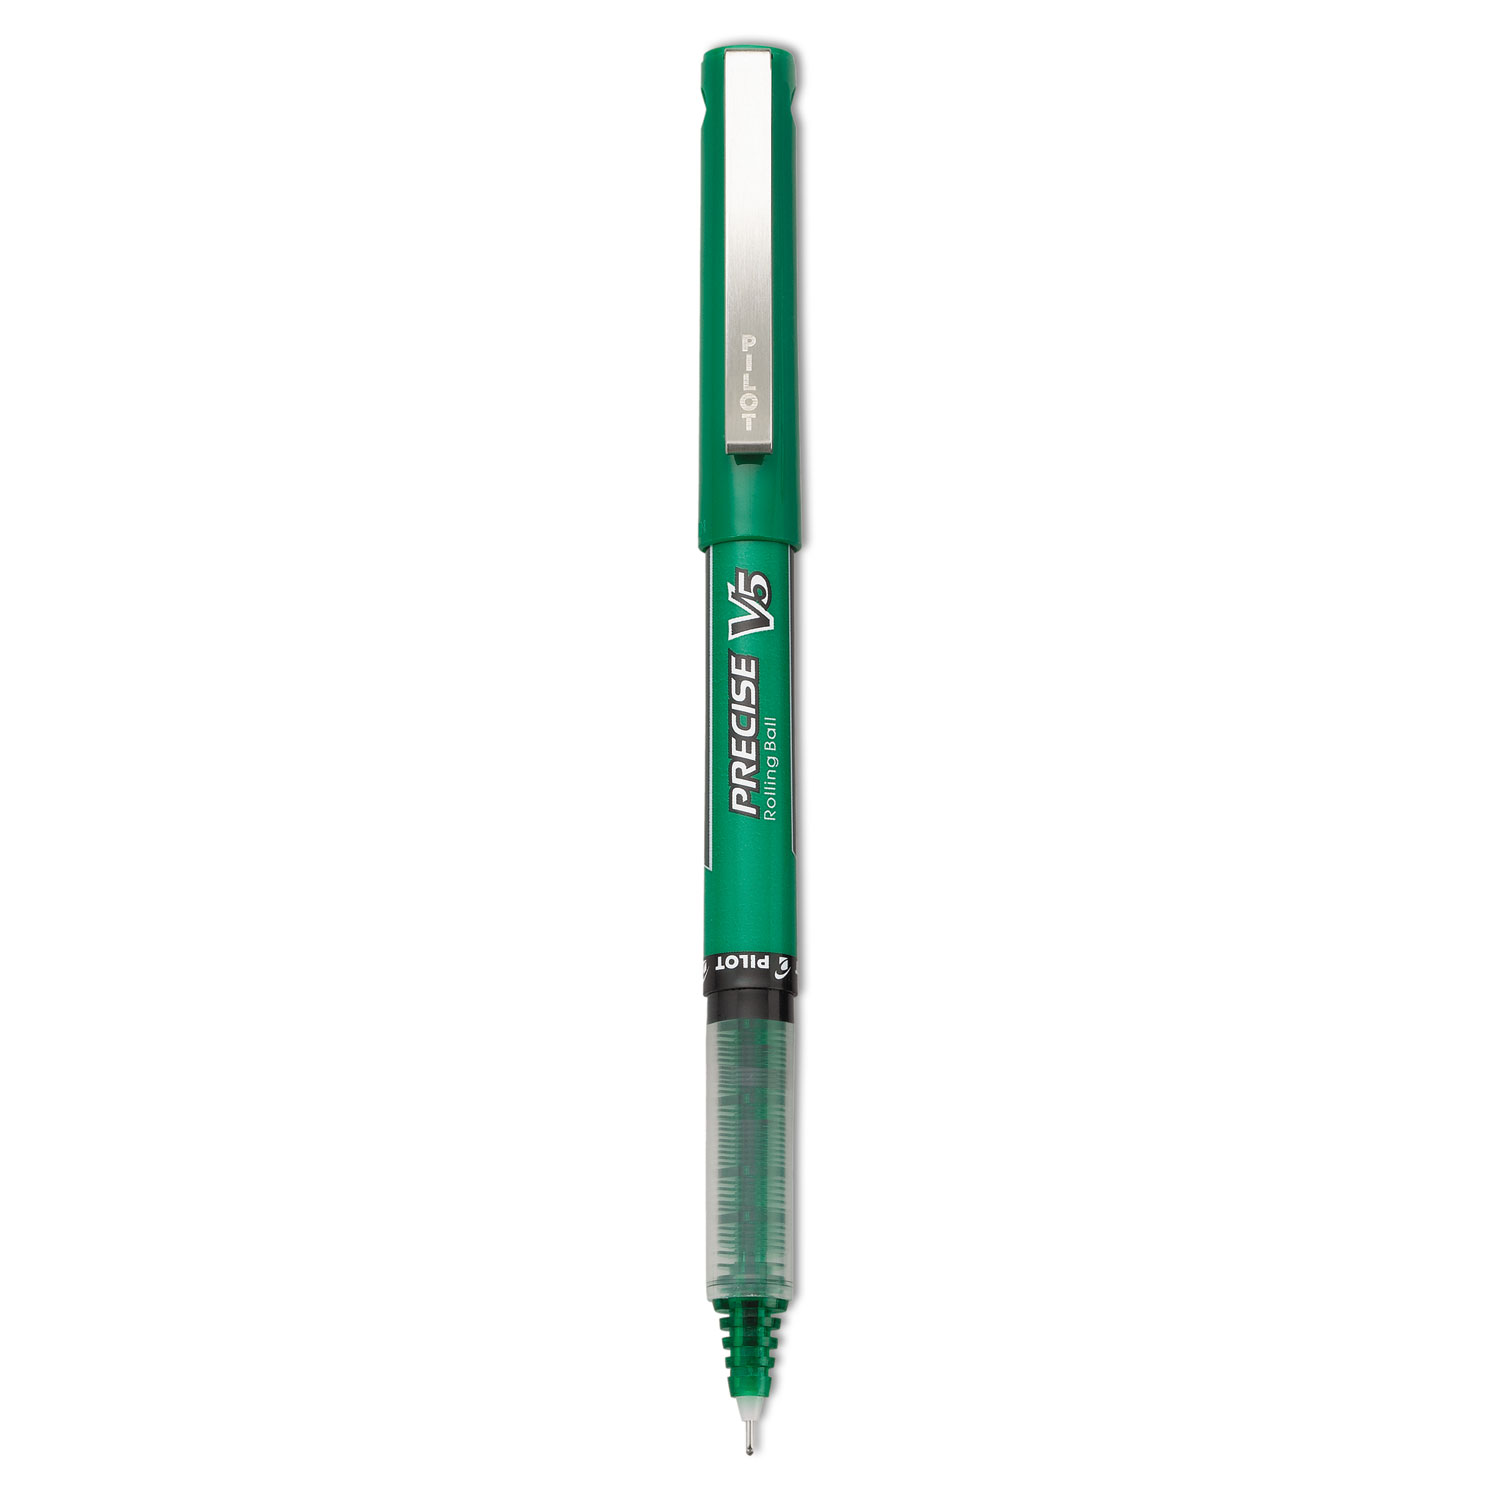  Pilot 25104 Precise V5 Stick Roller Ball Pen, Extra-Fine 0.5mm, Green Ink/Barrel, Dozen (PIL25104) 